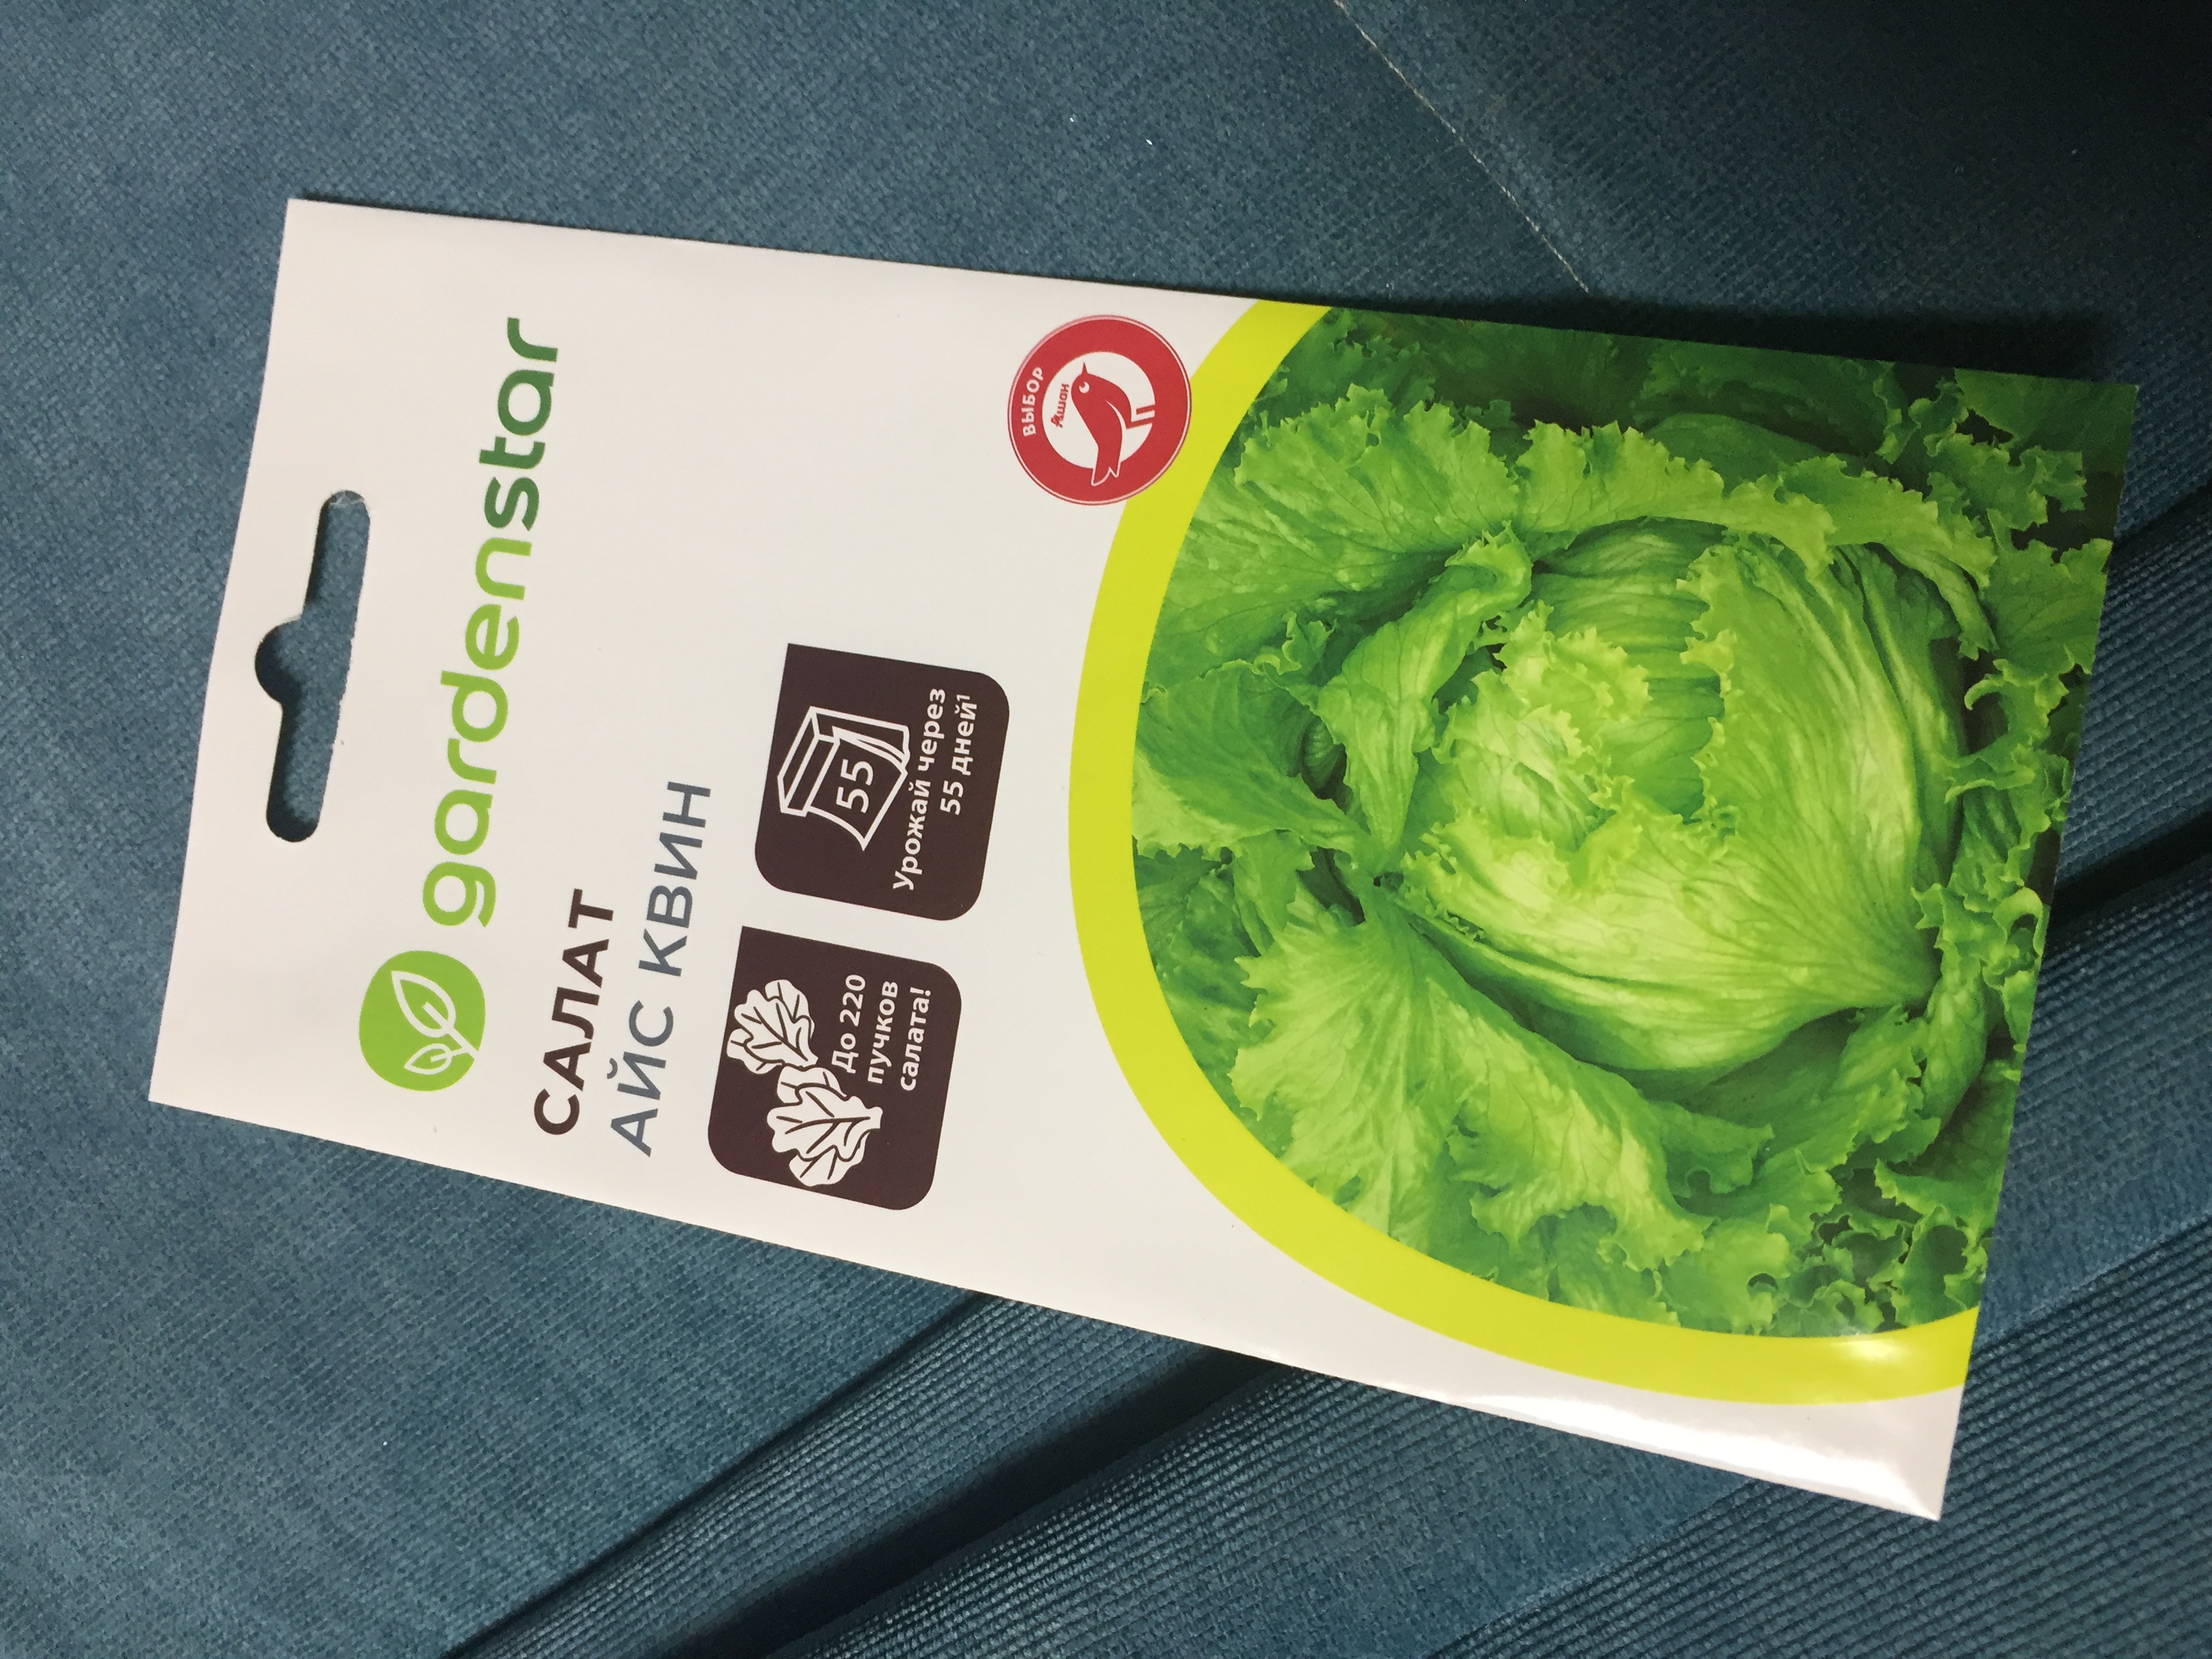 Салат, которого вы еще не пробовали: выбираем сорта листовых и кочанных салатов